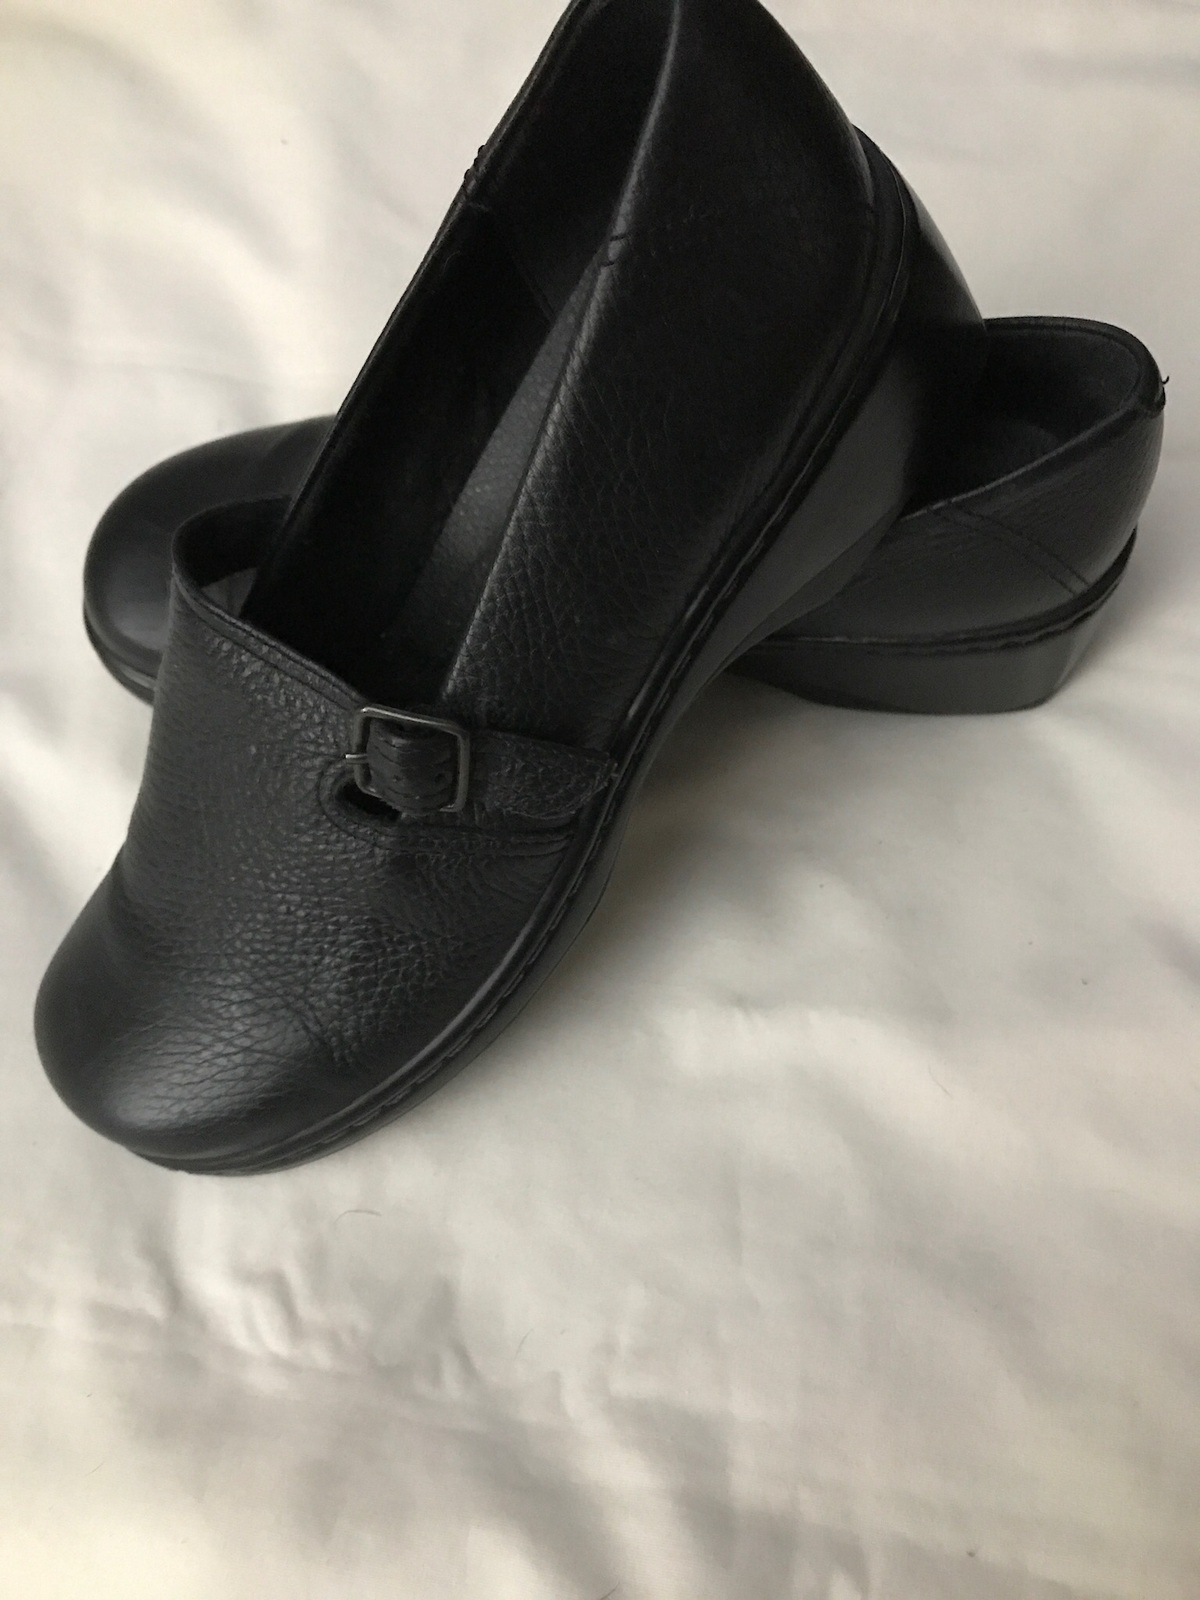 Women's Clarks Shoes Size 8P - Flats & Oxfords